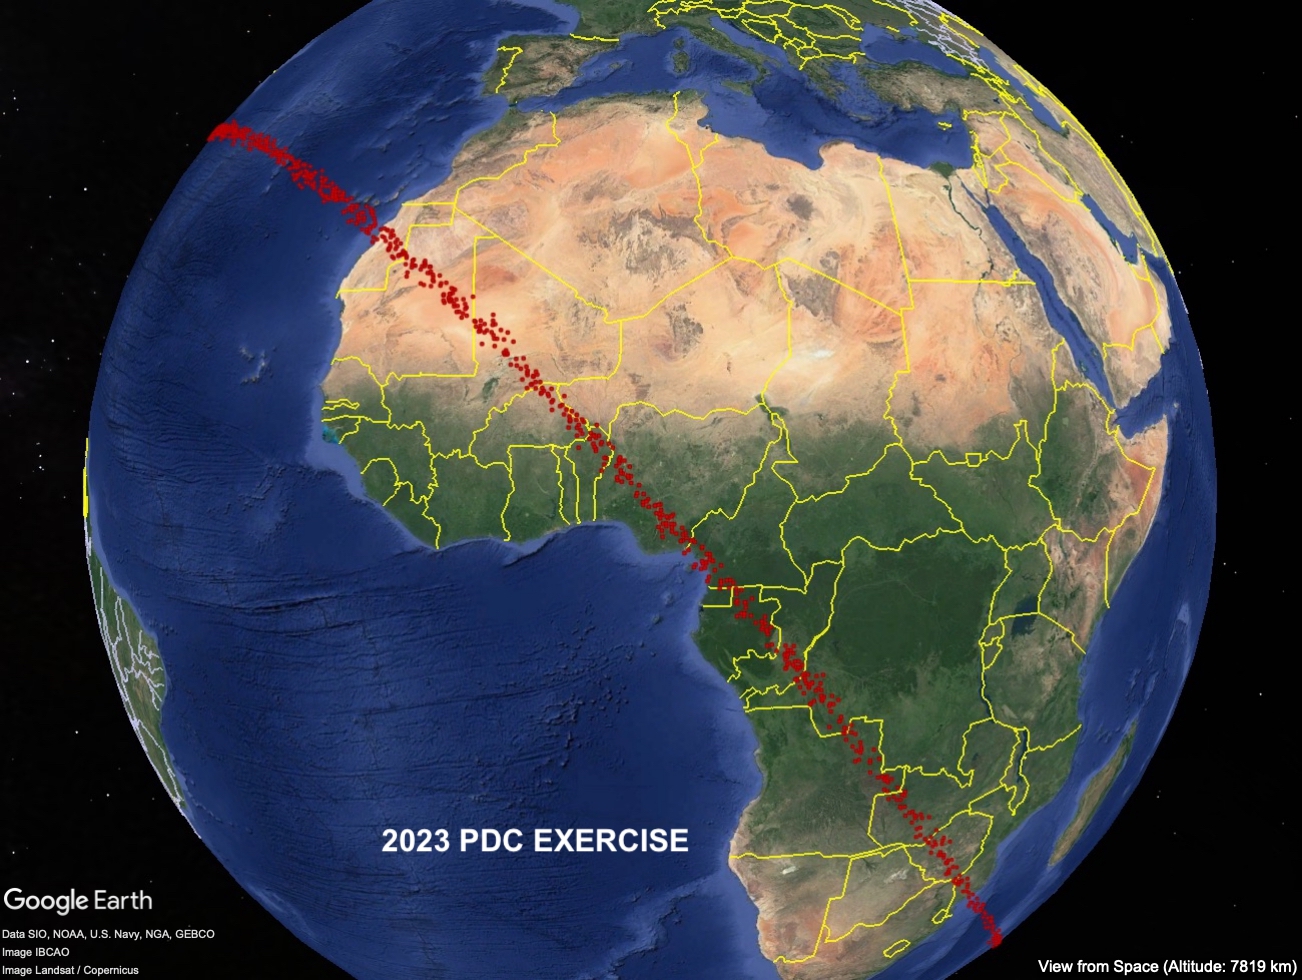 Risk corridor for 2023 PDC - Eastern portion